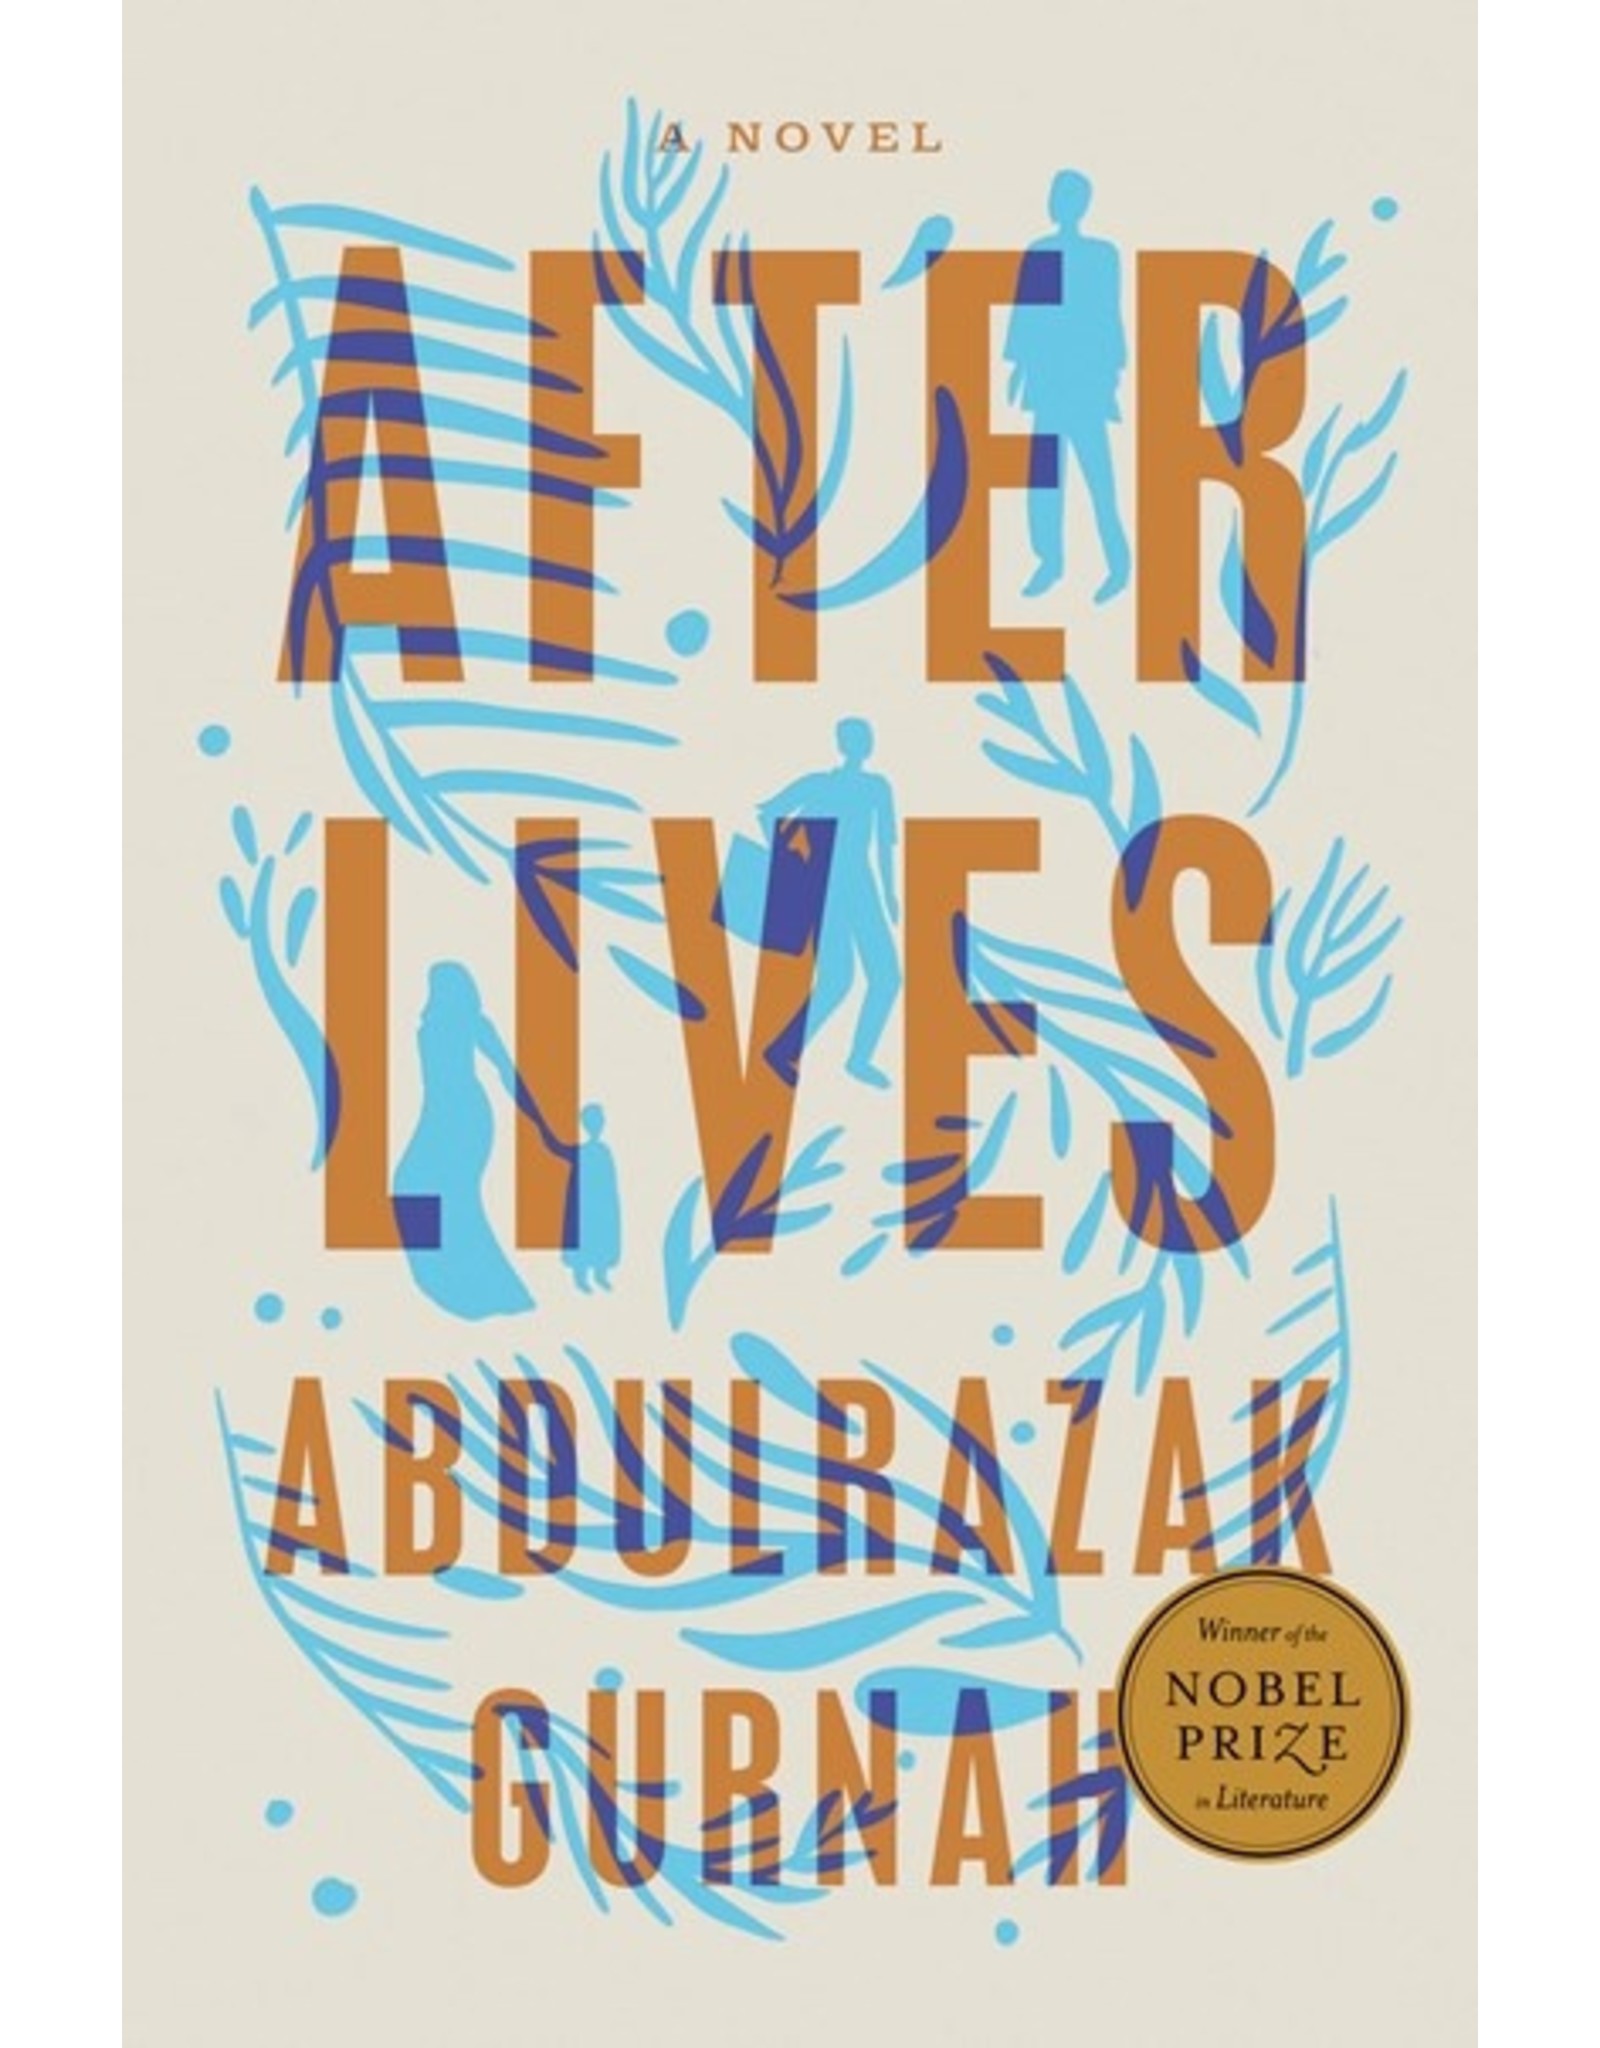 Books After Lives : A Novel by Abdulrazak Gurnah